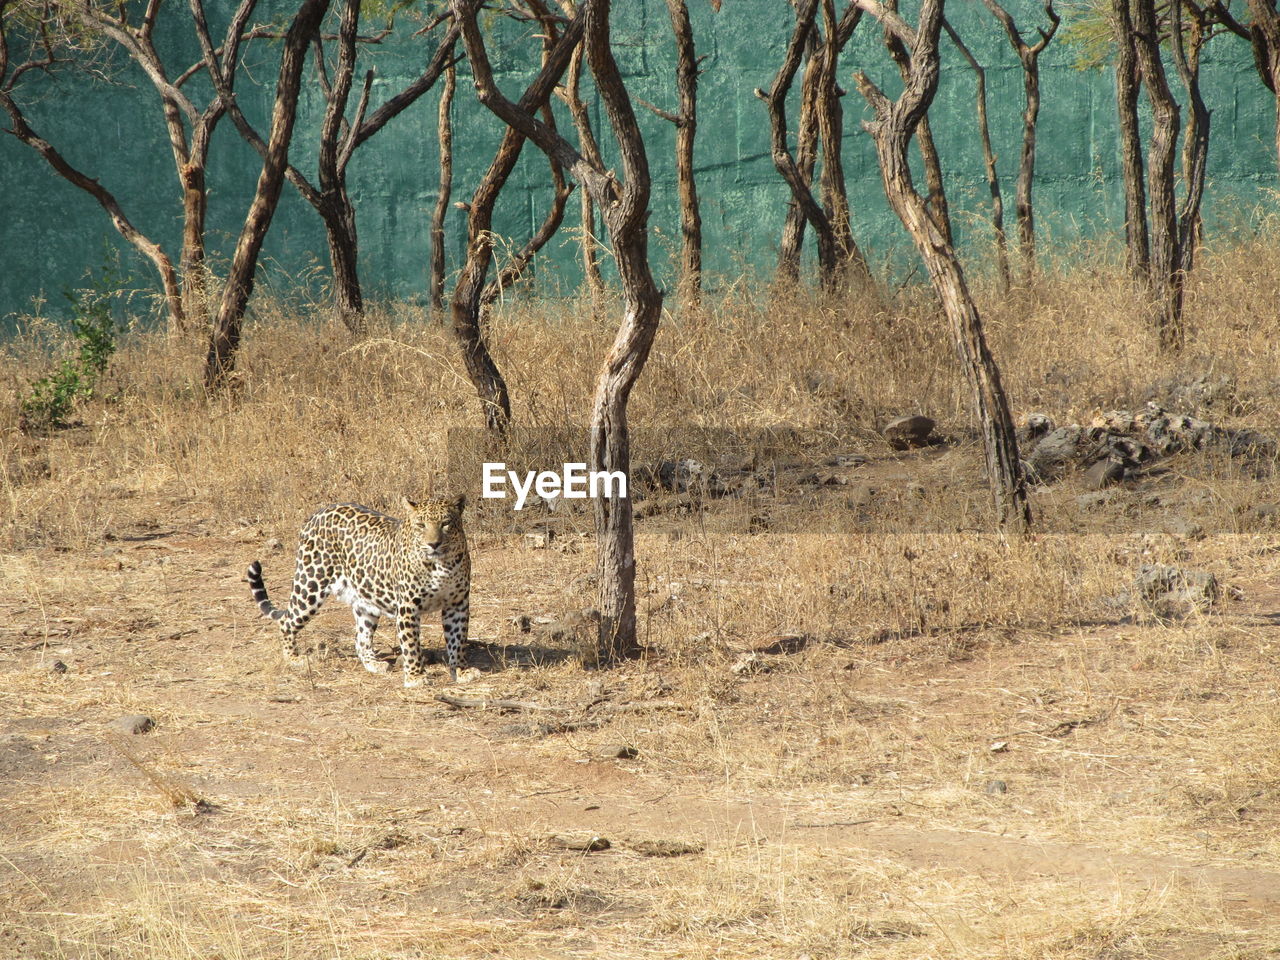 Leopard on field by trees